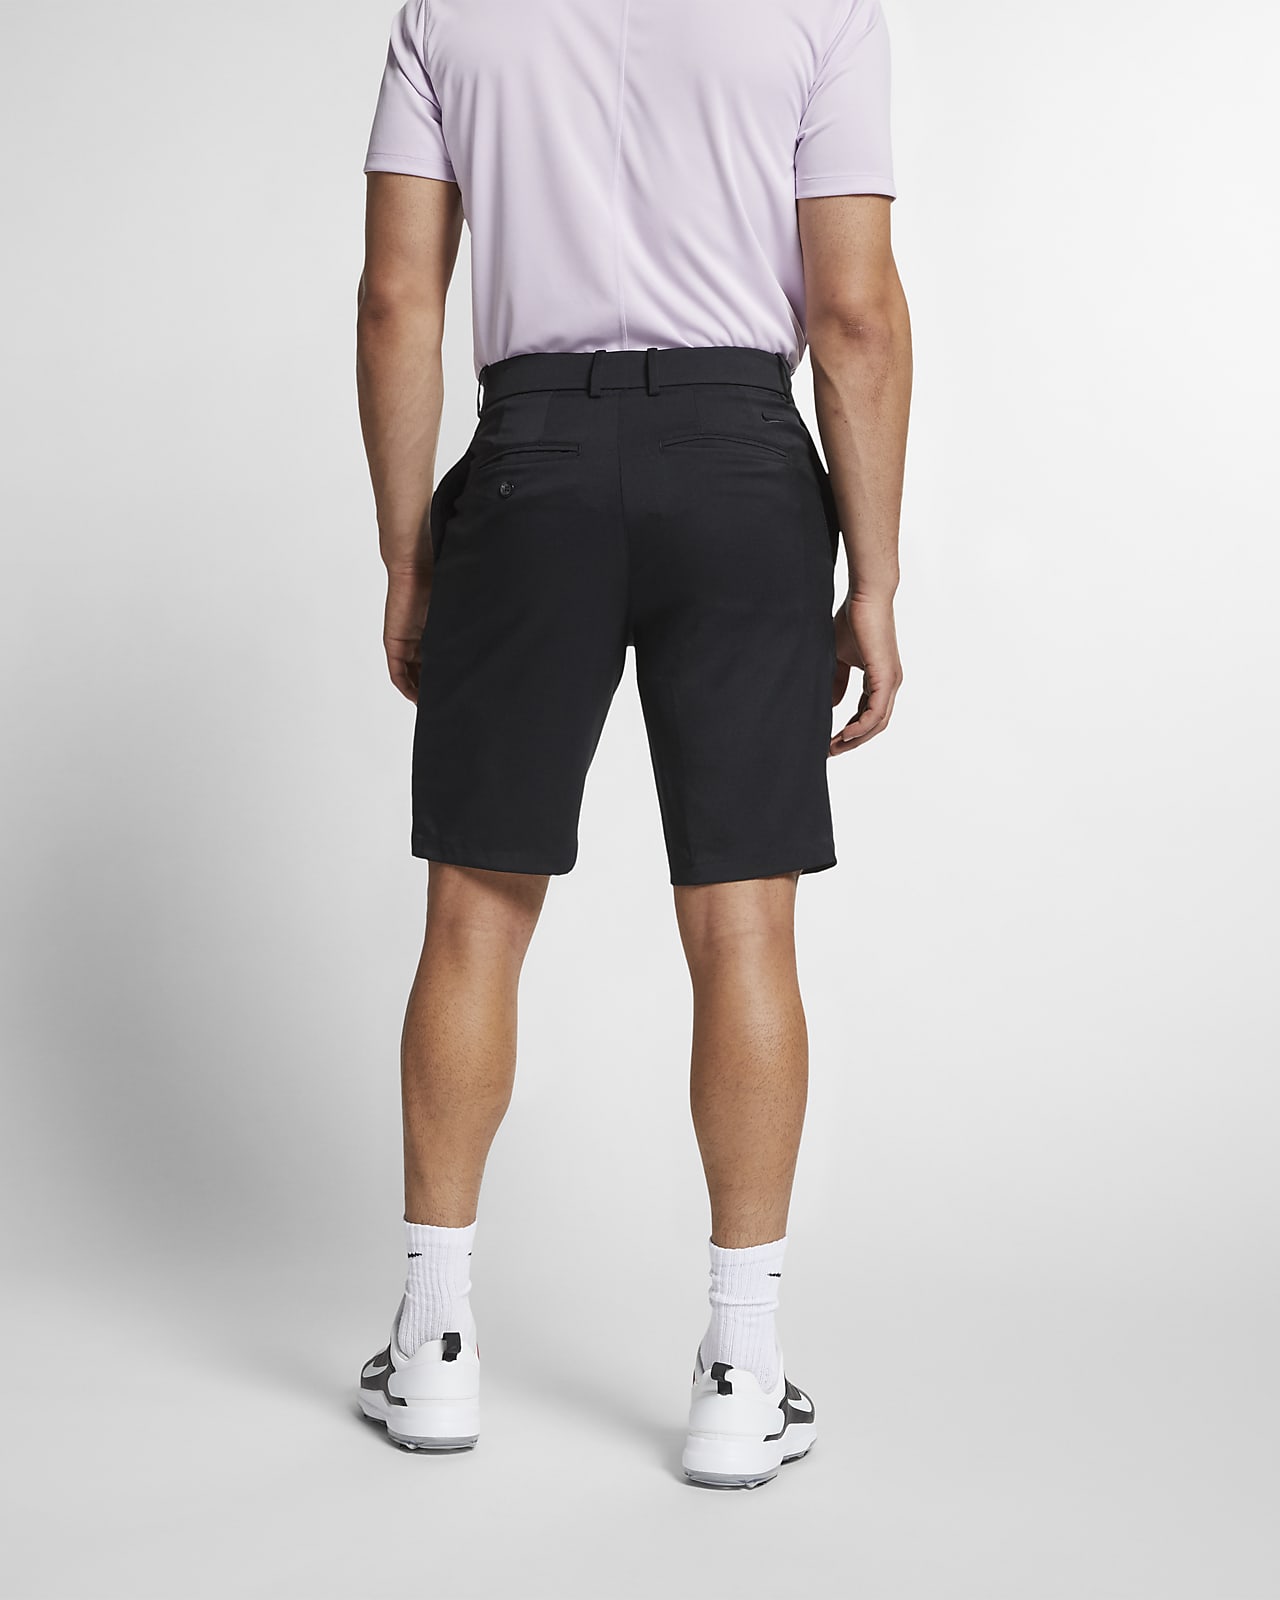 nike flex shorts golf